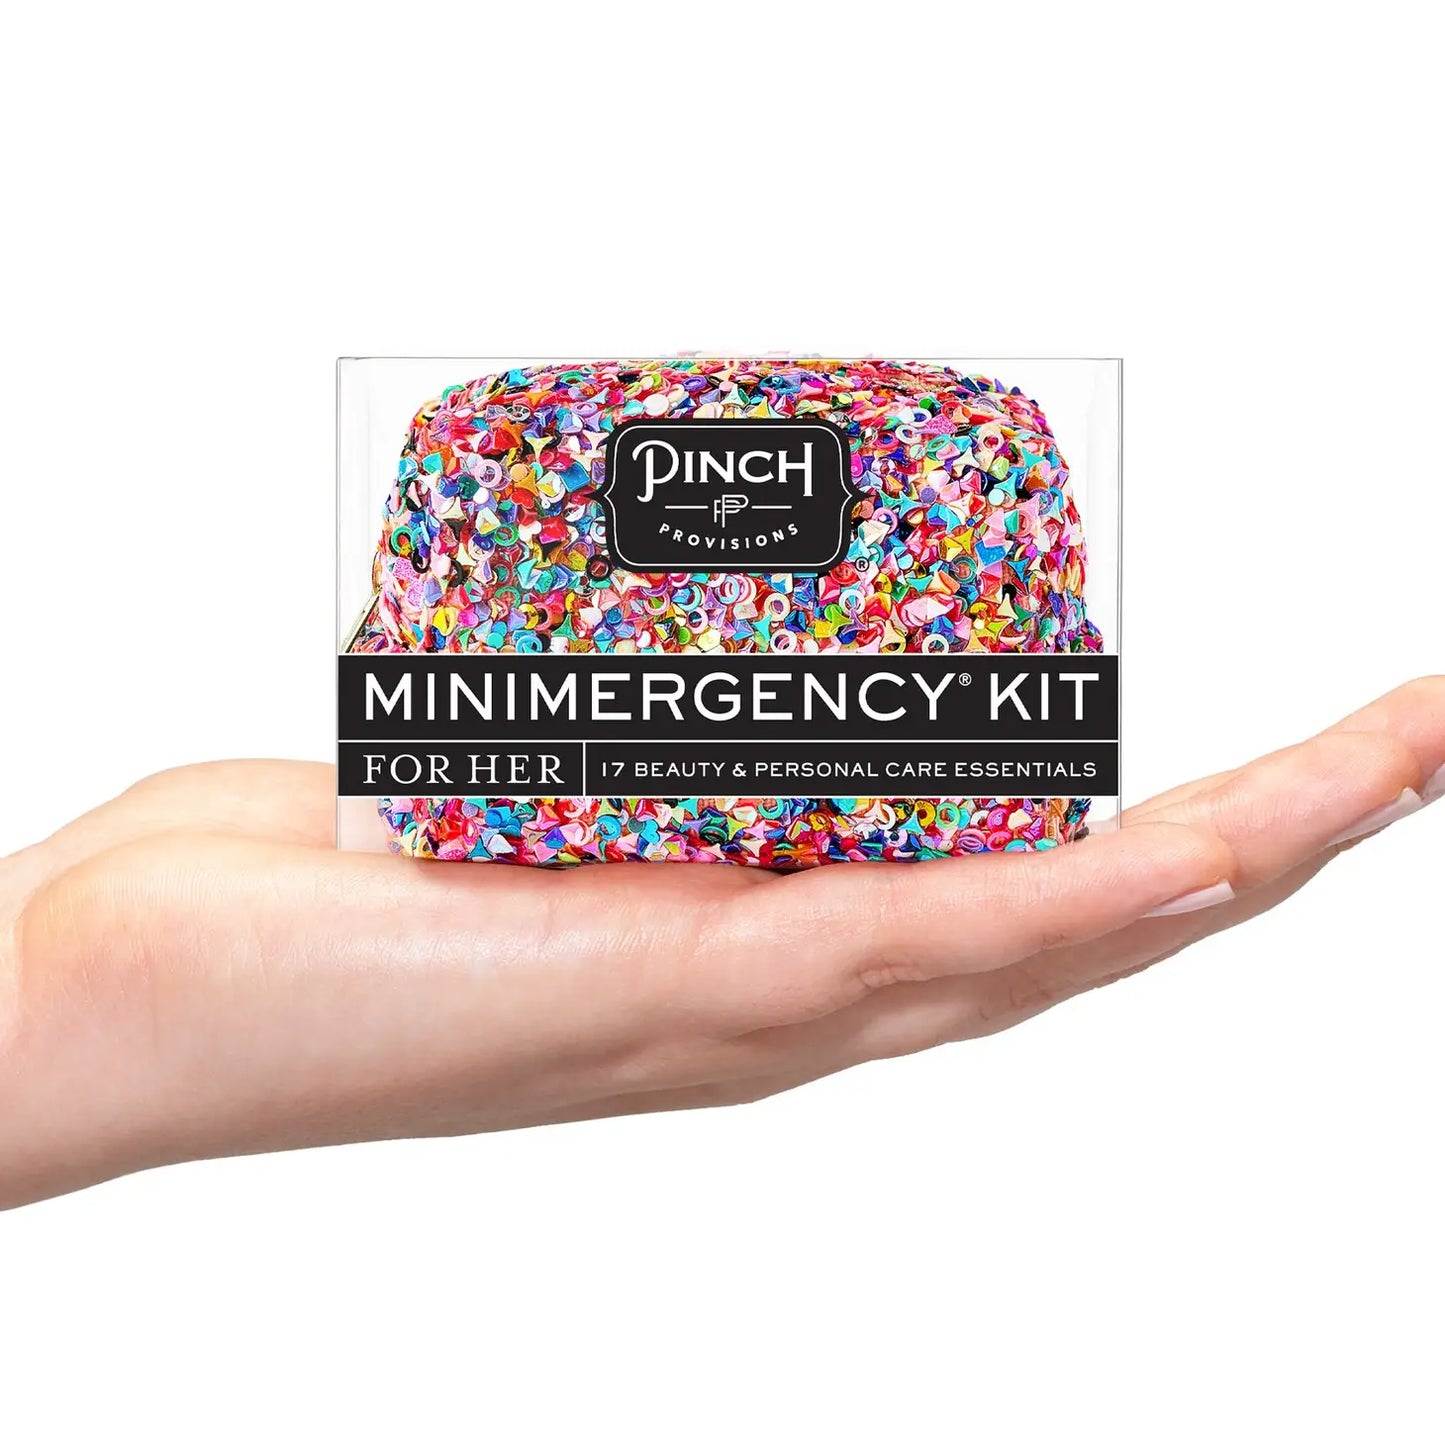 Minimergency kit